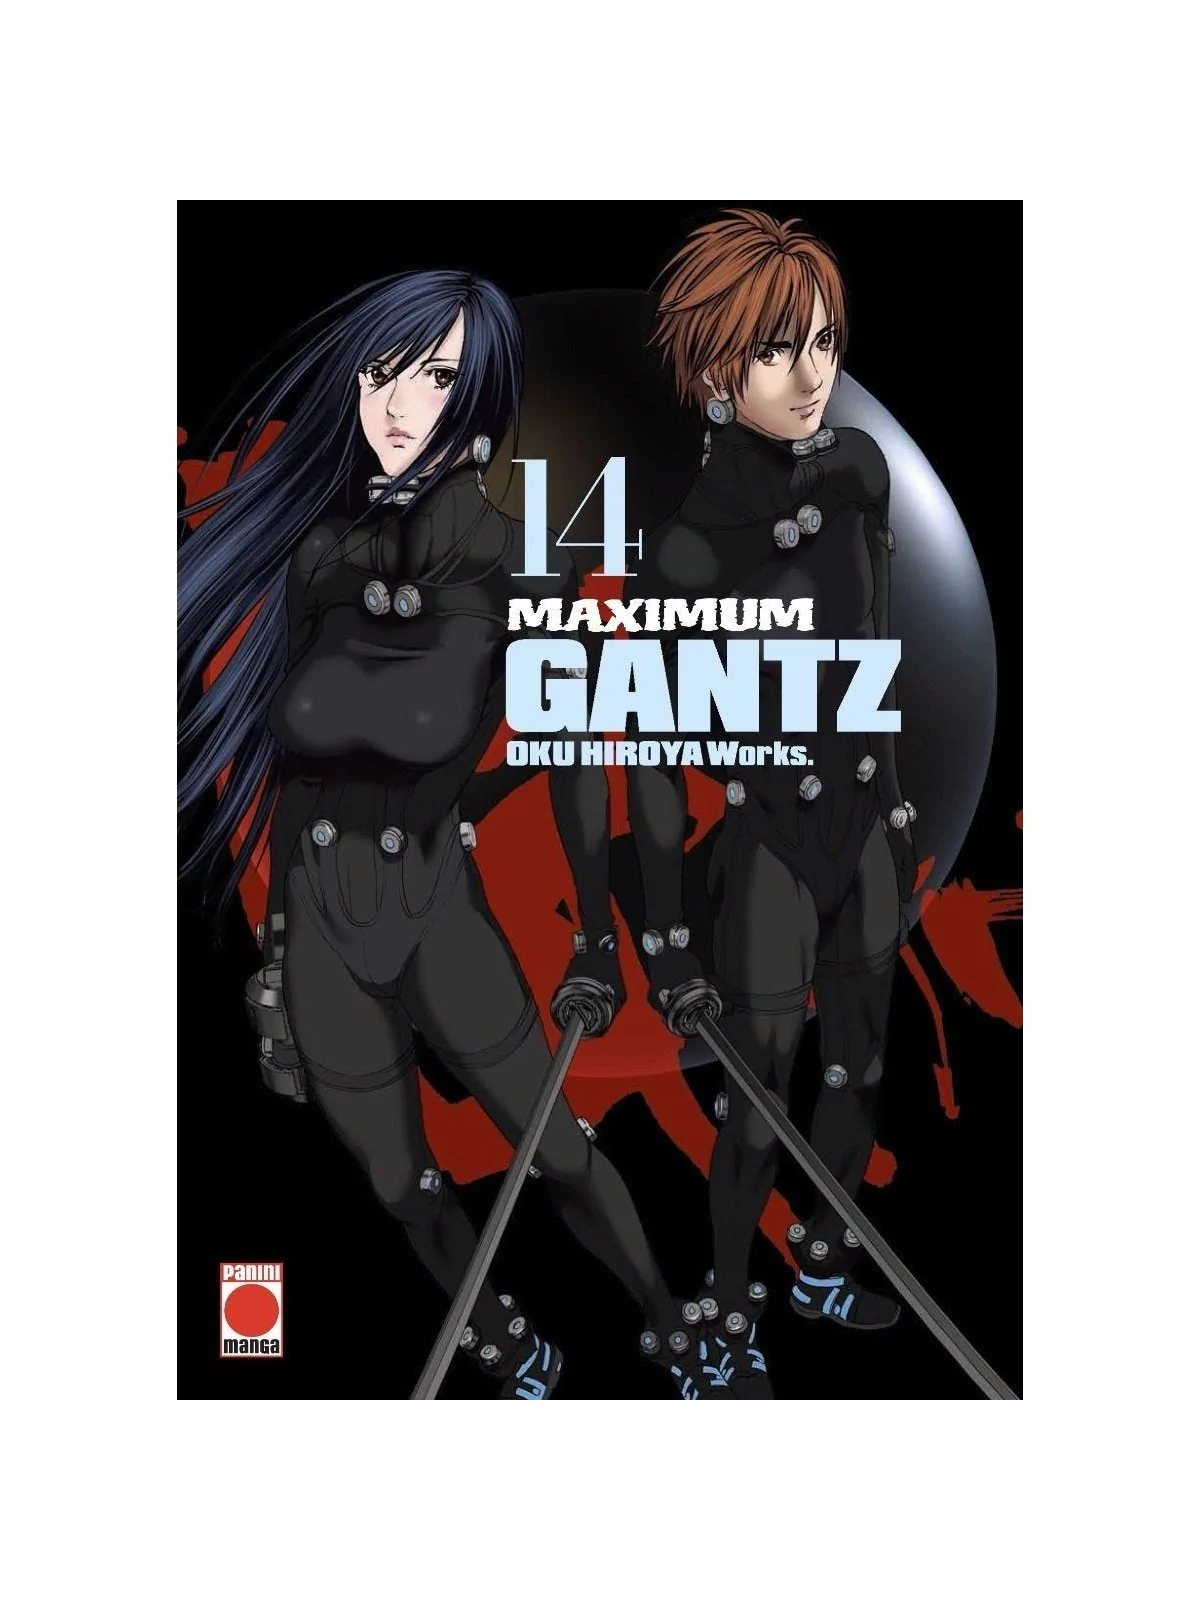 Comprar Gantz Maximum 14 barato al mejor precio 14,25 € de Panini Comi